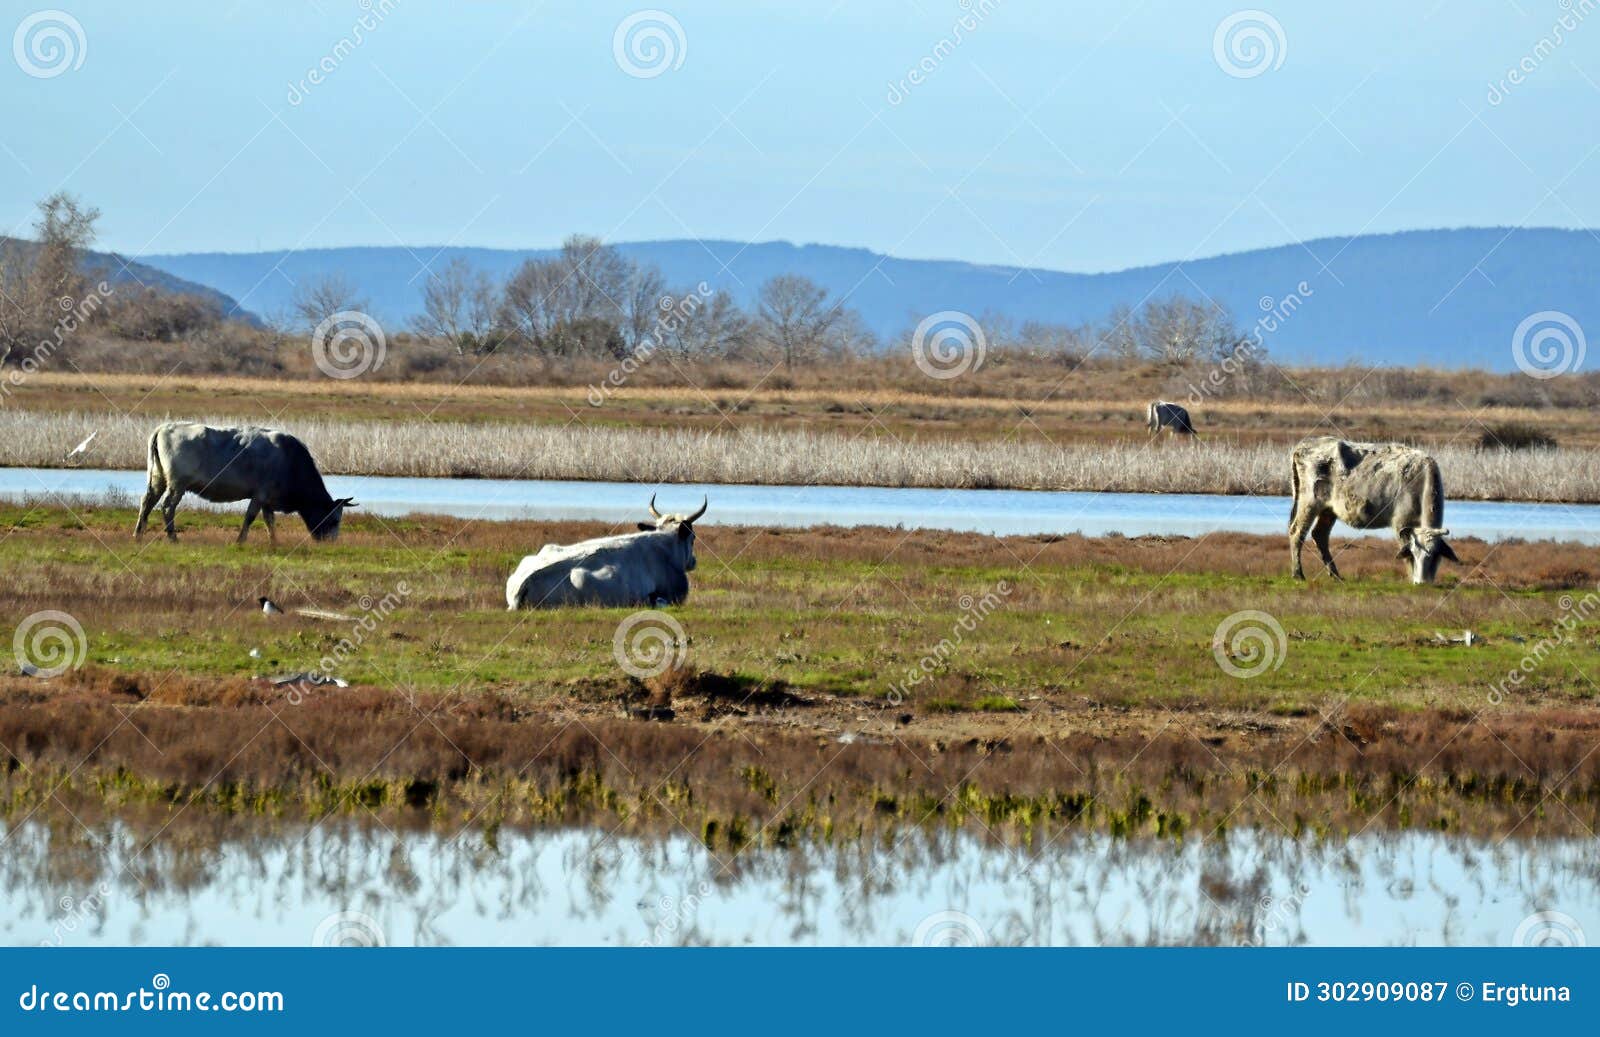 cows graze near a lagoon